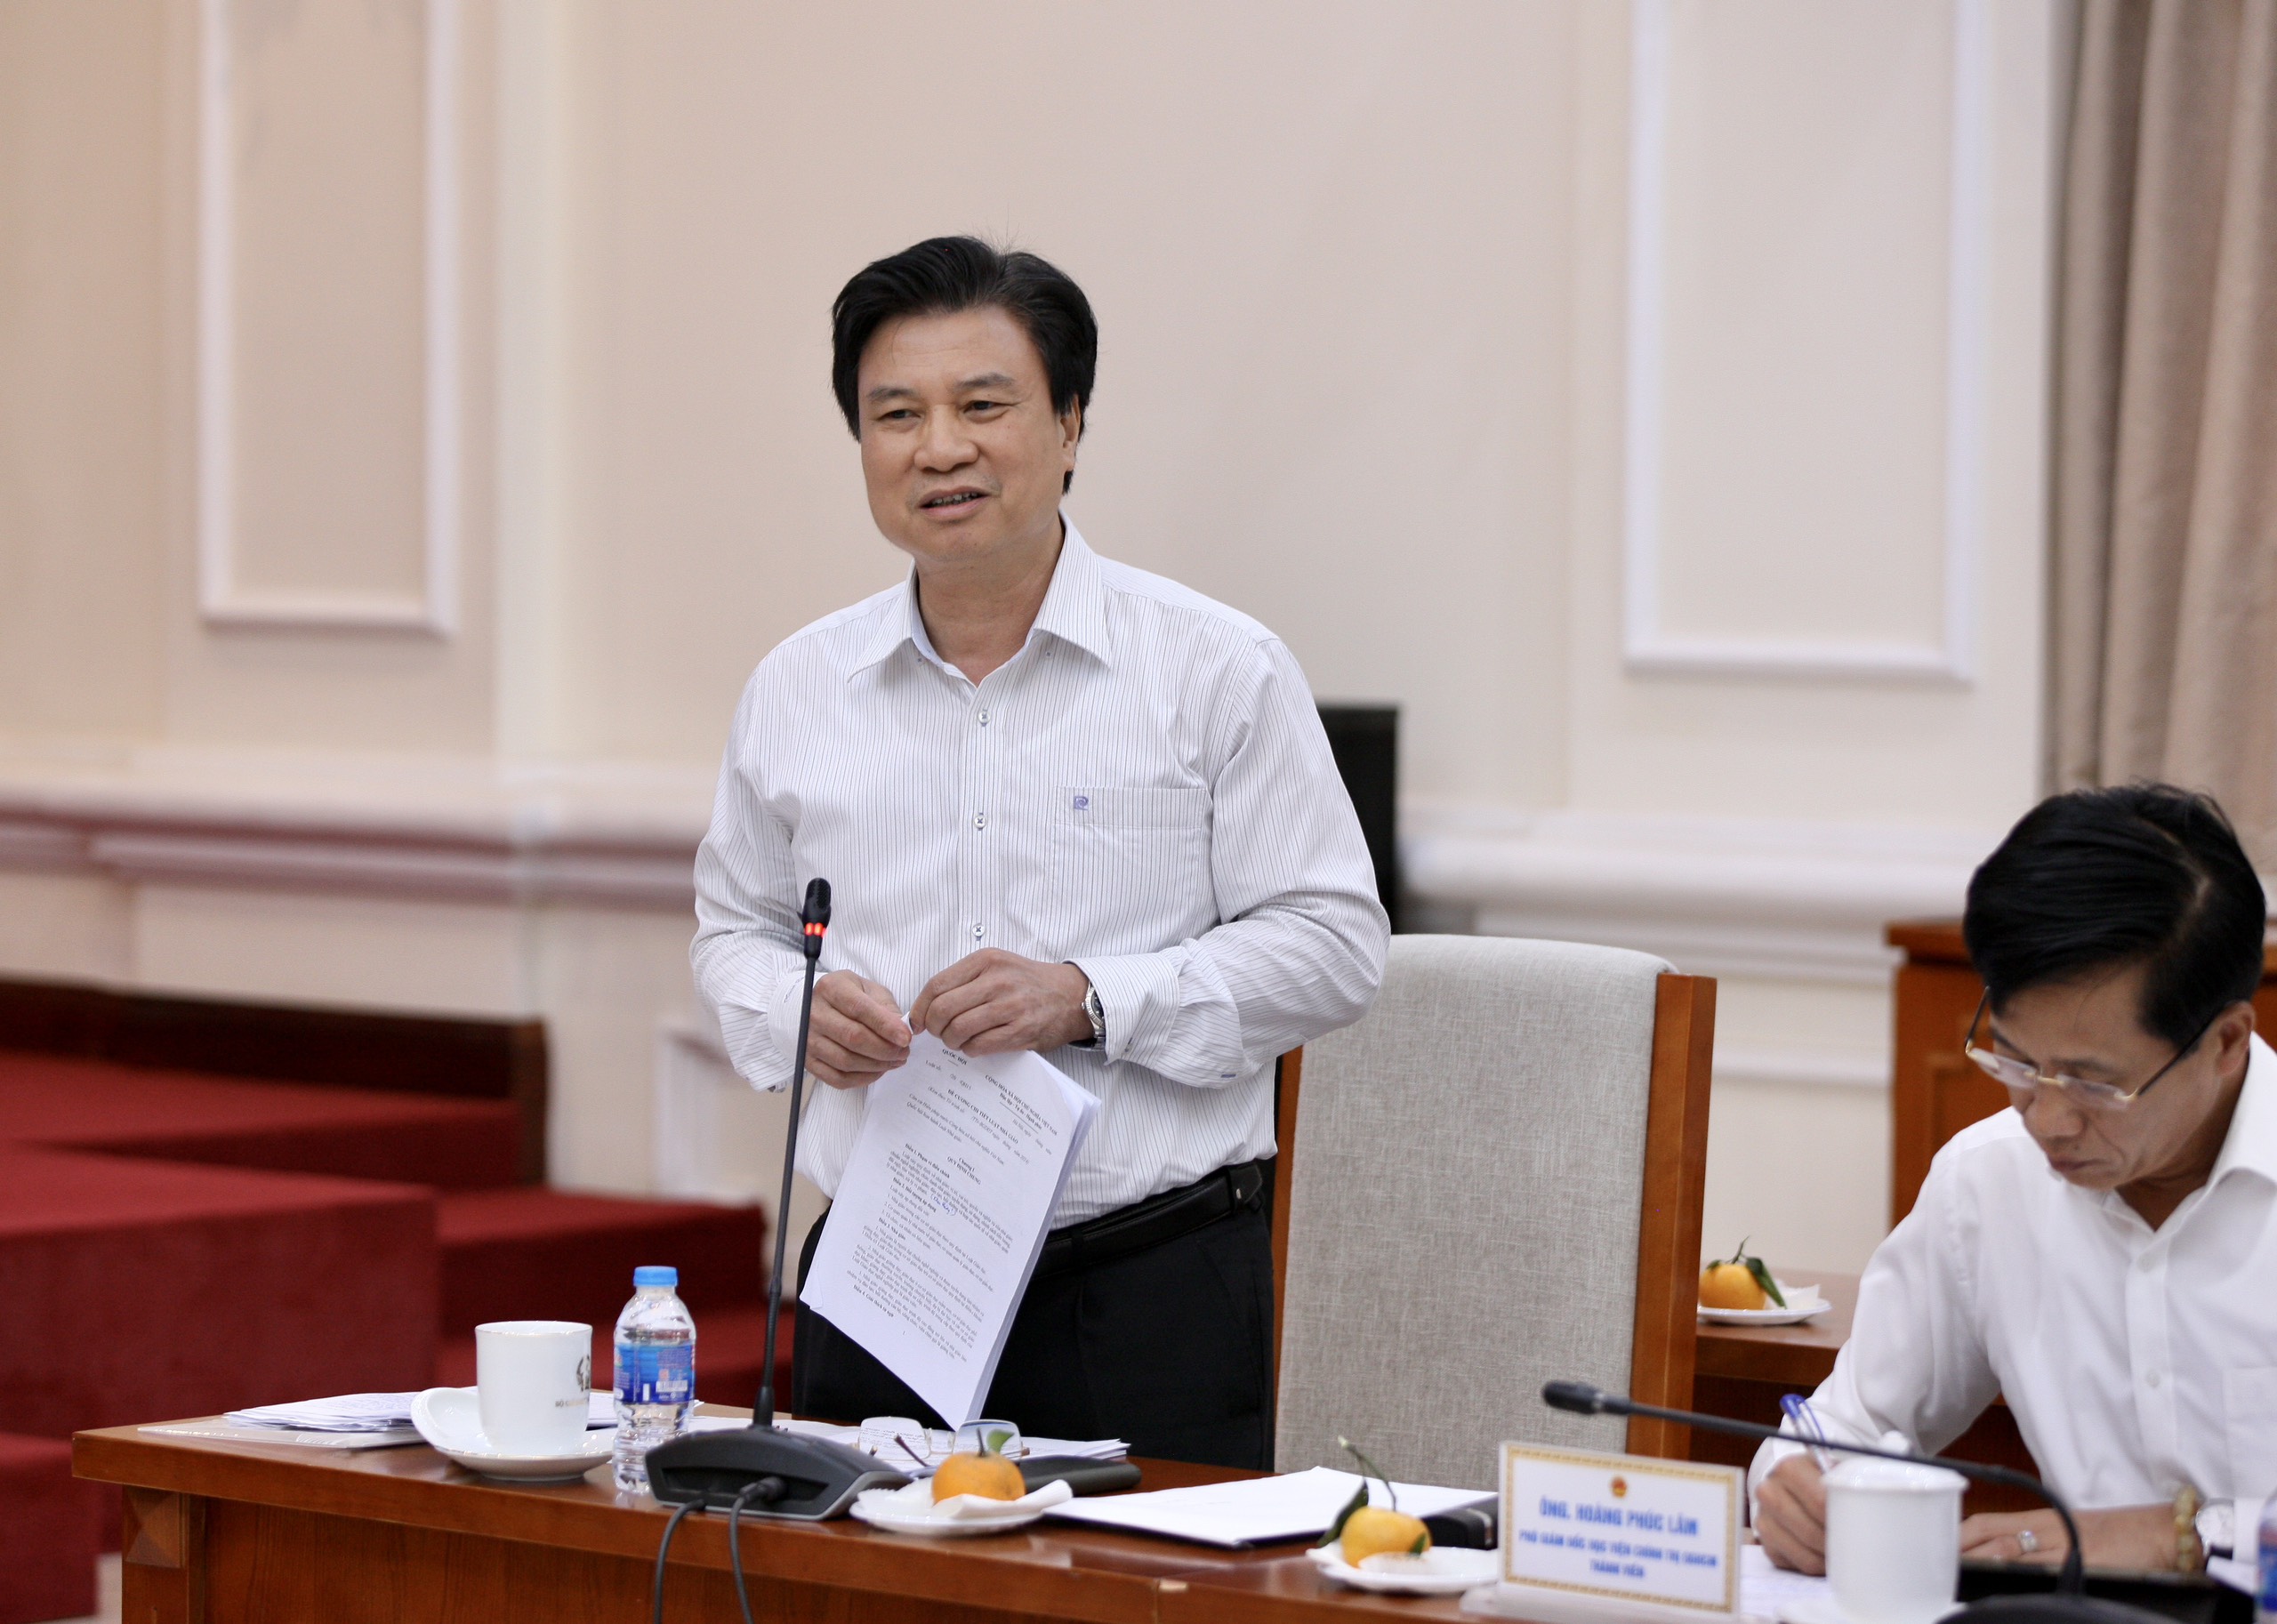 Phiên họp nhận được 10 ý kiến góp ý của các chuyên gia. Trong ảnh: Nguyên Thứ trưởng Bộ GD&ĐT Nguyễn Hữu Độ phát biểu góp ý dự thảo Luật Nhà giáo.